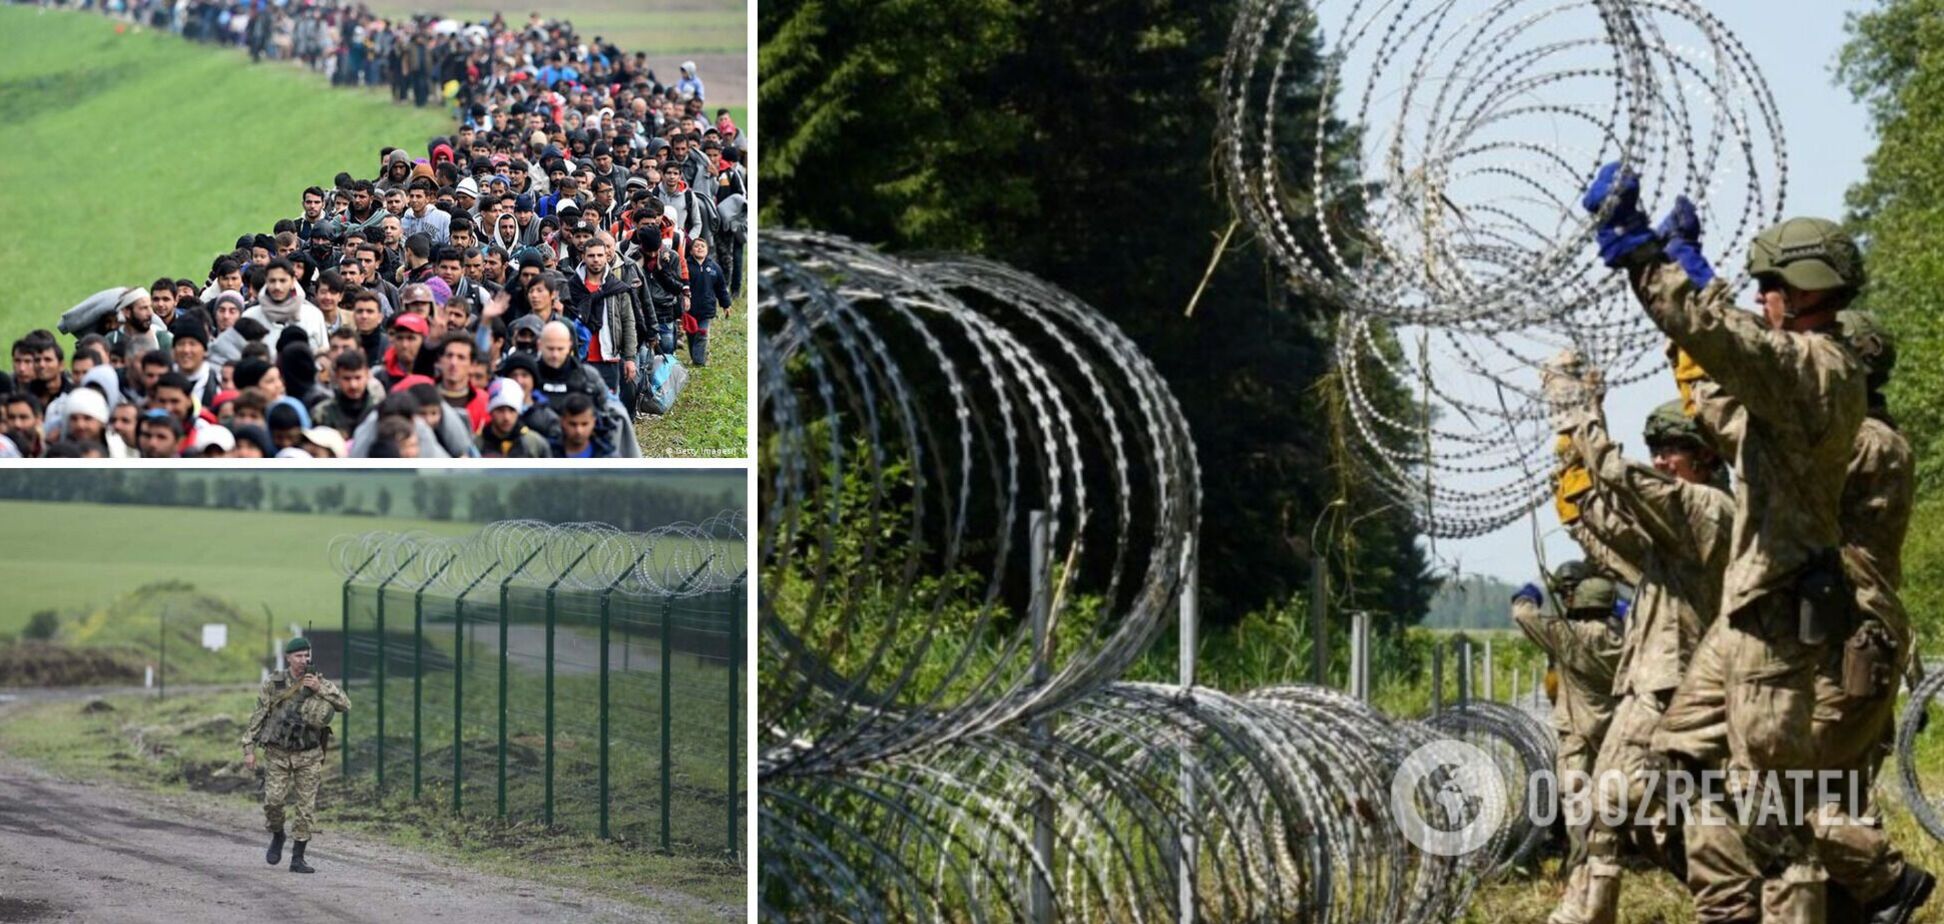 Ситуация на польской границе: теперь видно, зачем 'стена'?